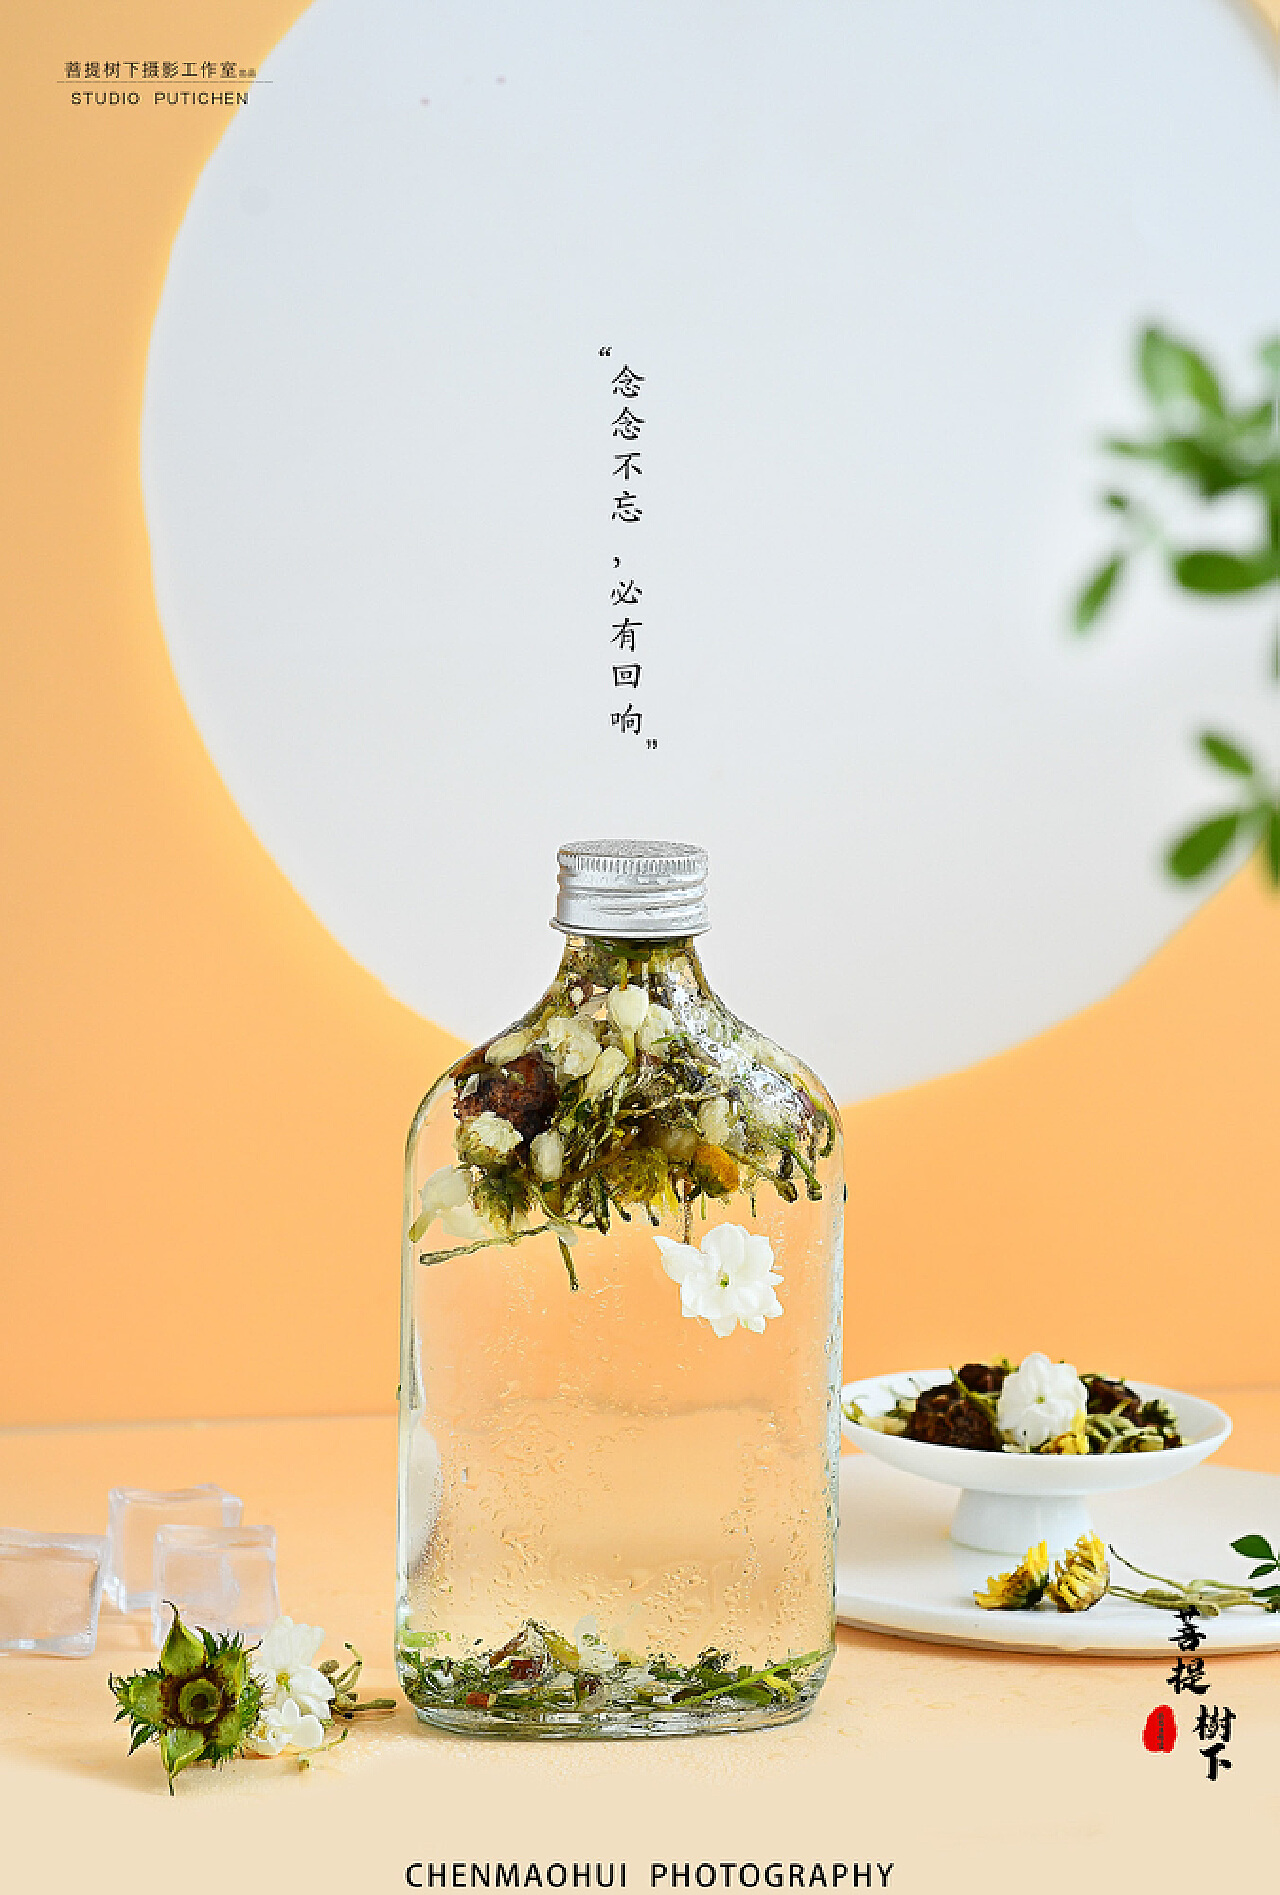 美丽茶藨子图片_植物根茎的美丽茶藨子图片大全 - 花卉网